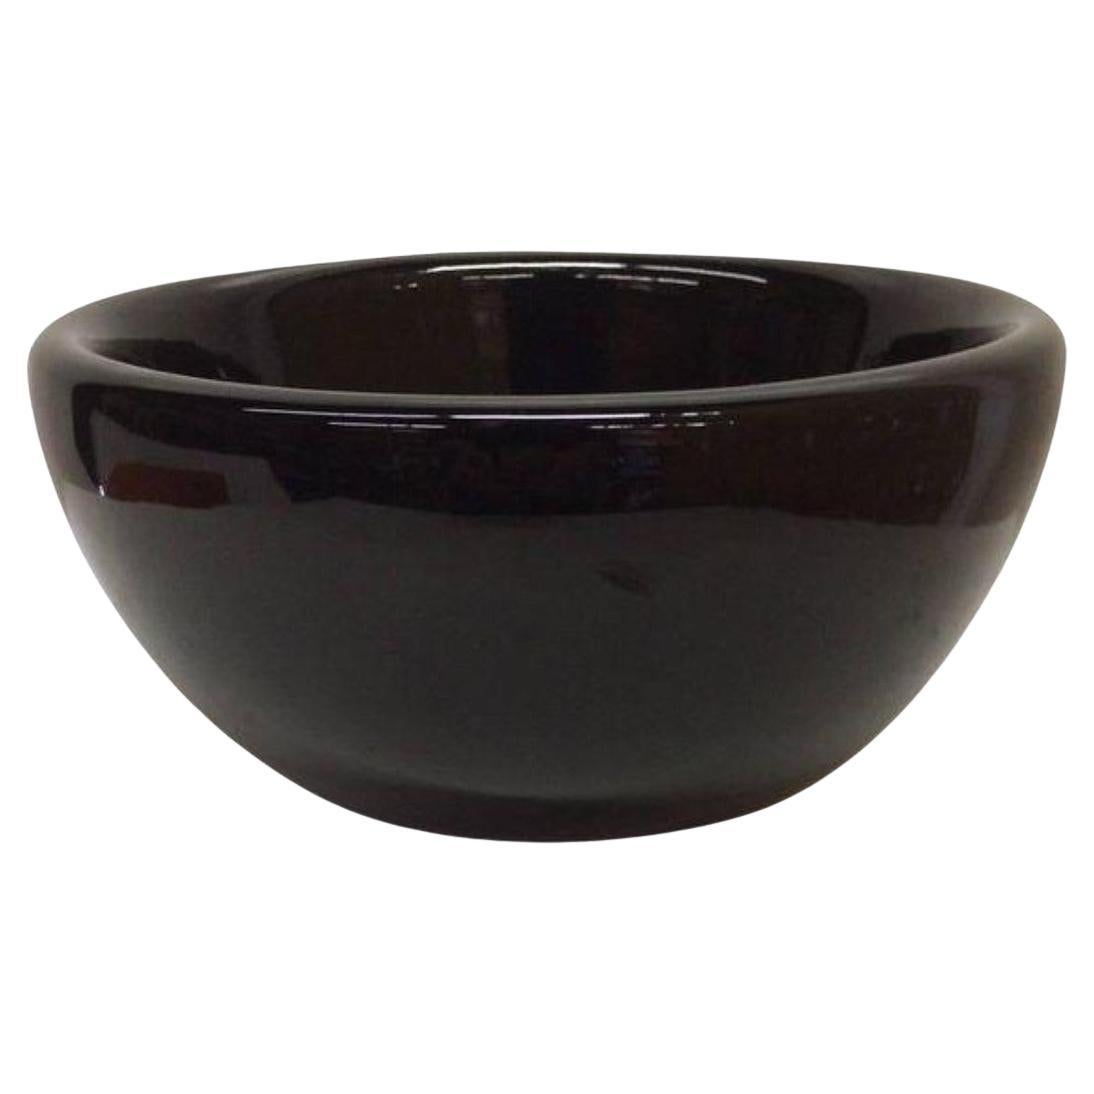 Original Black Bodum Bowl by C Jorgensen